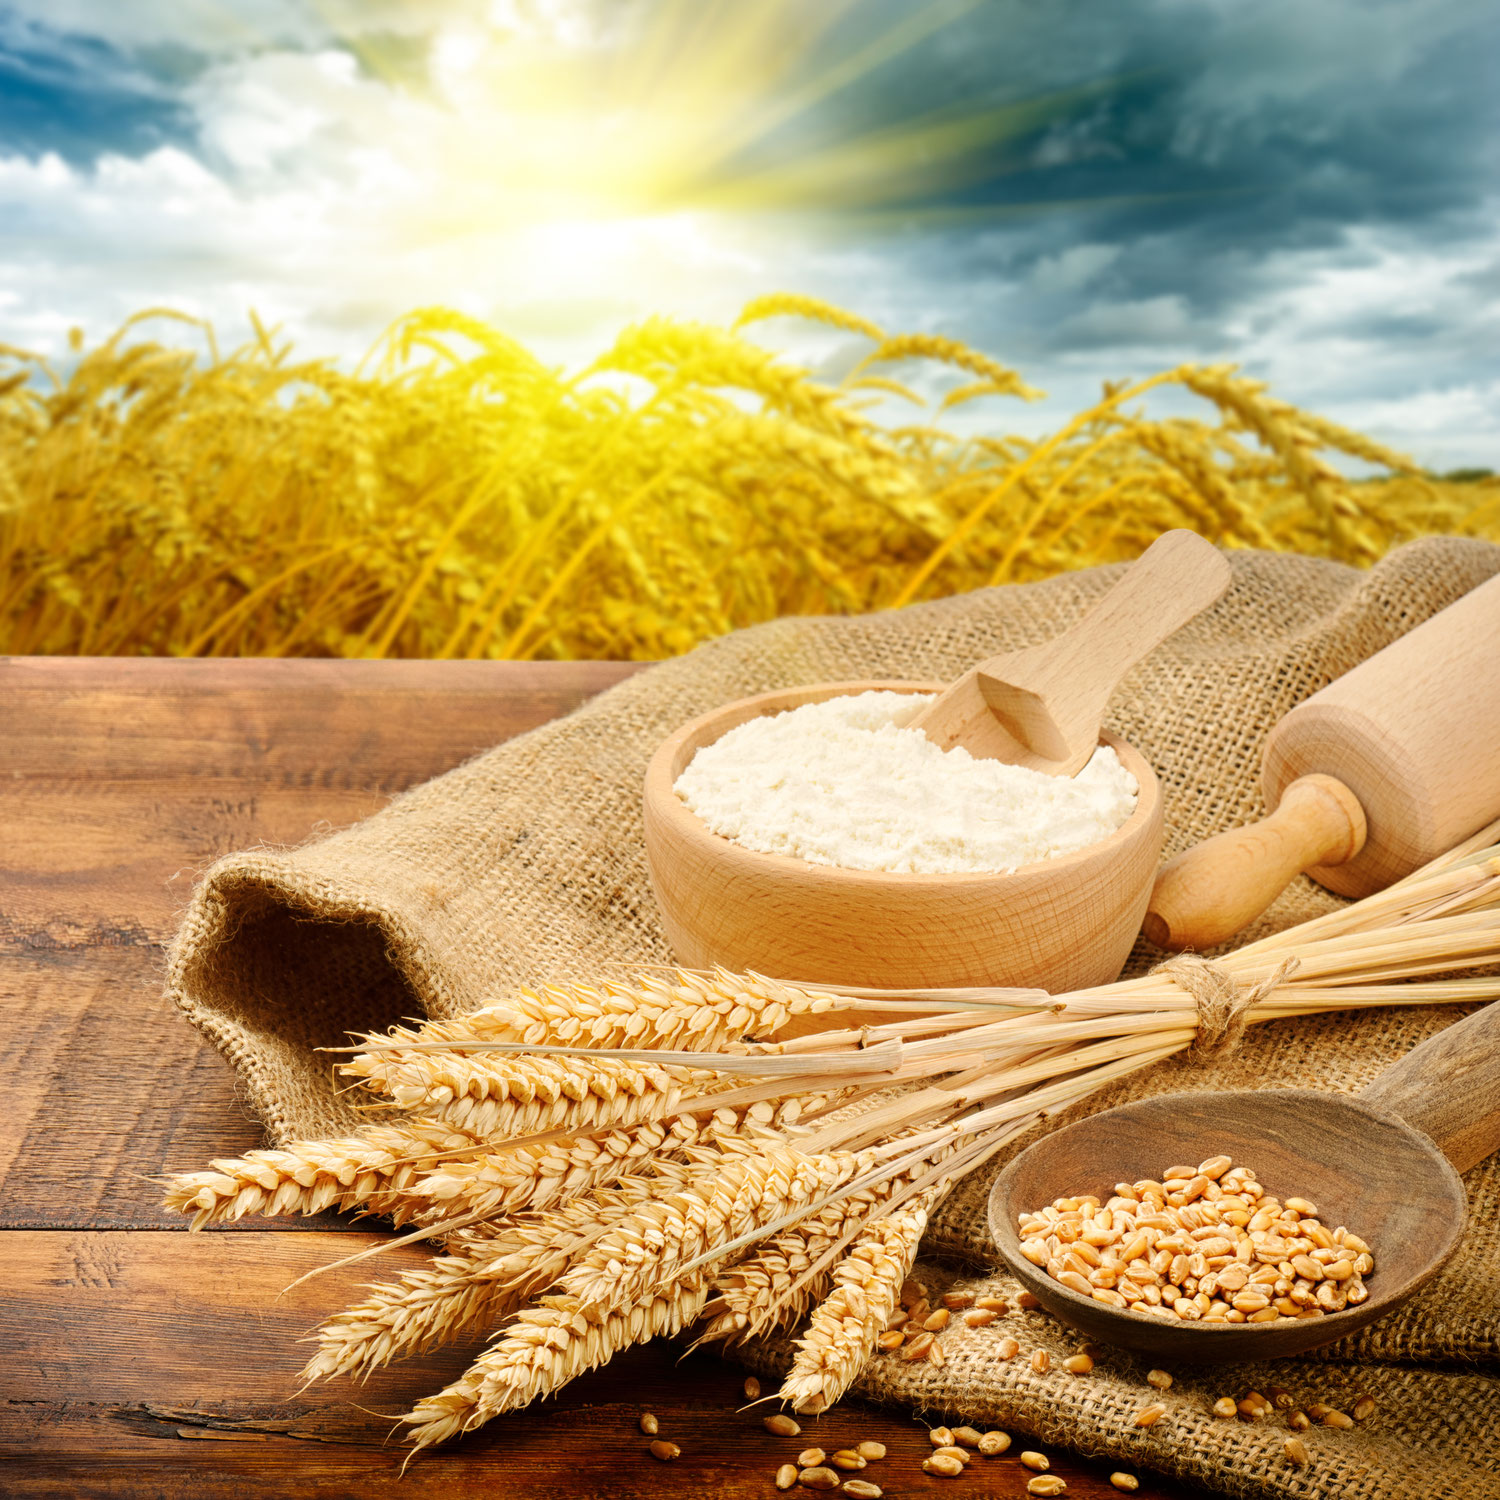 Welches Getreide ist gesünder? Dinkel  oder Weizen?